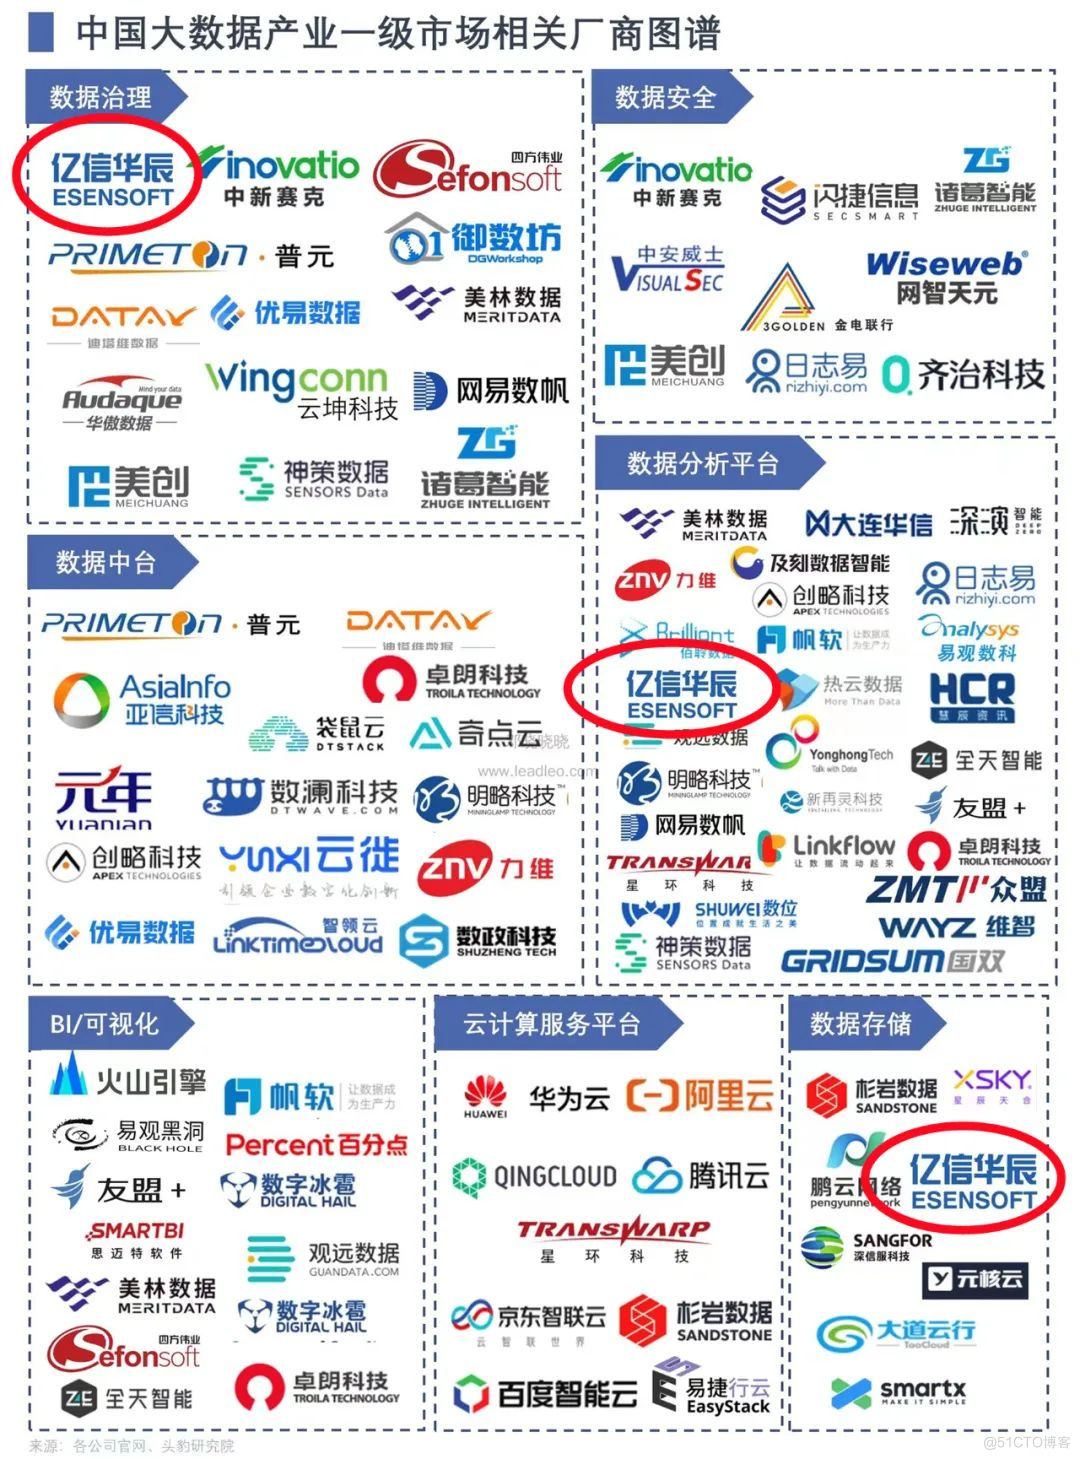 亿信华辰入选中国大数据产业一级市场相关厂商图谱_数据分析